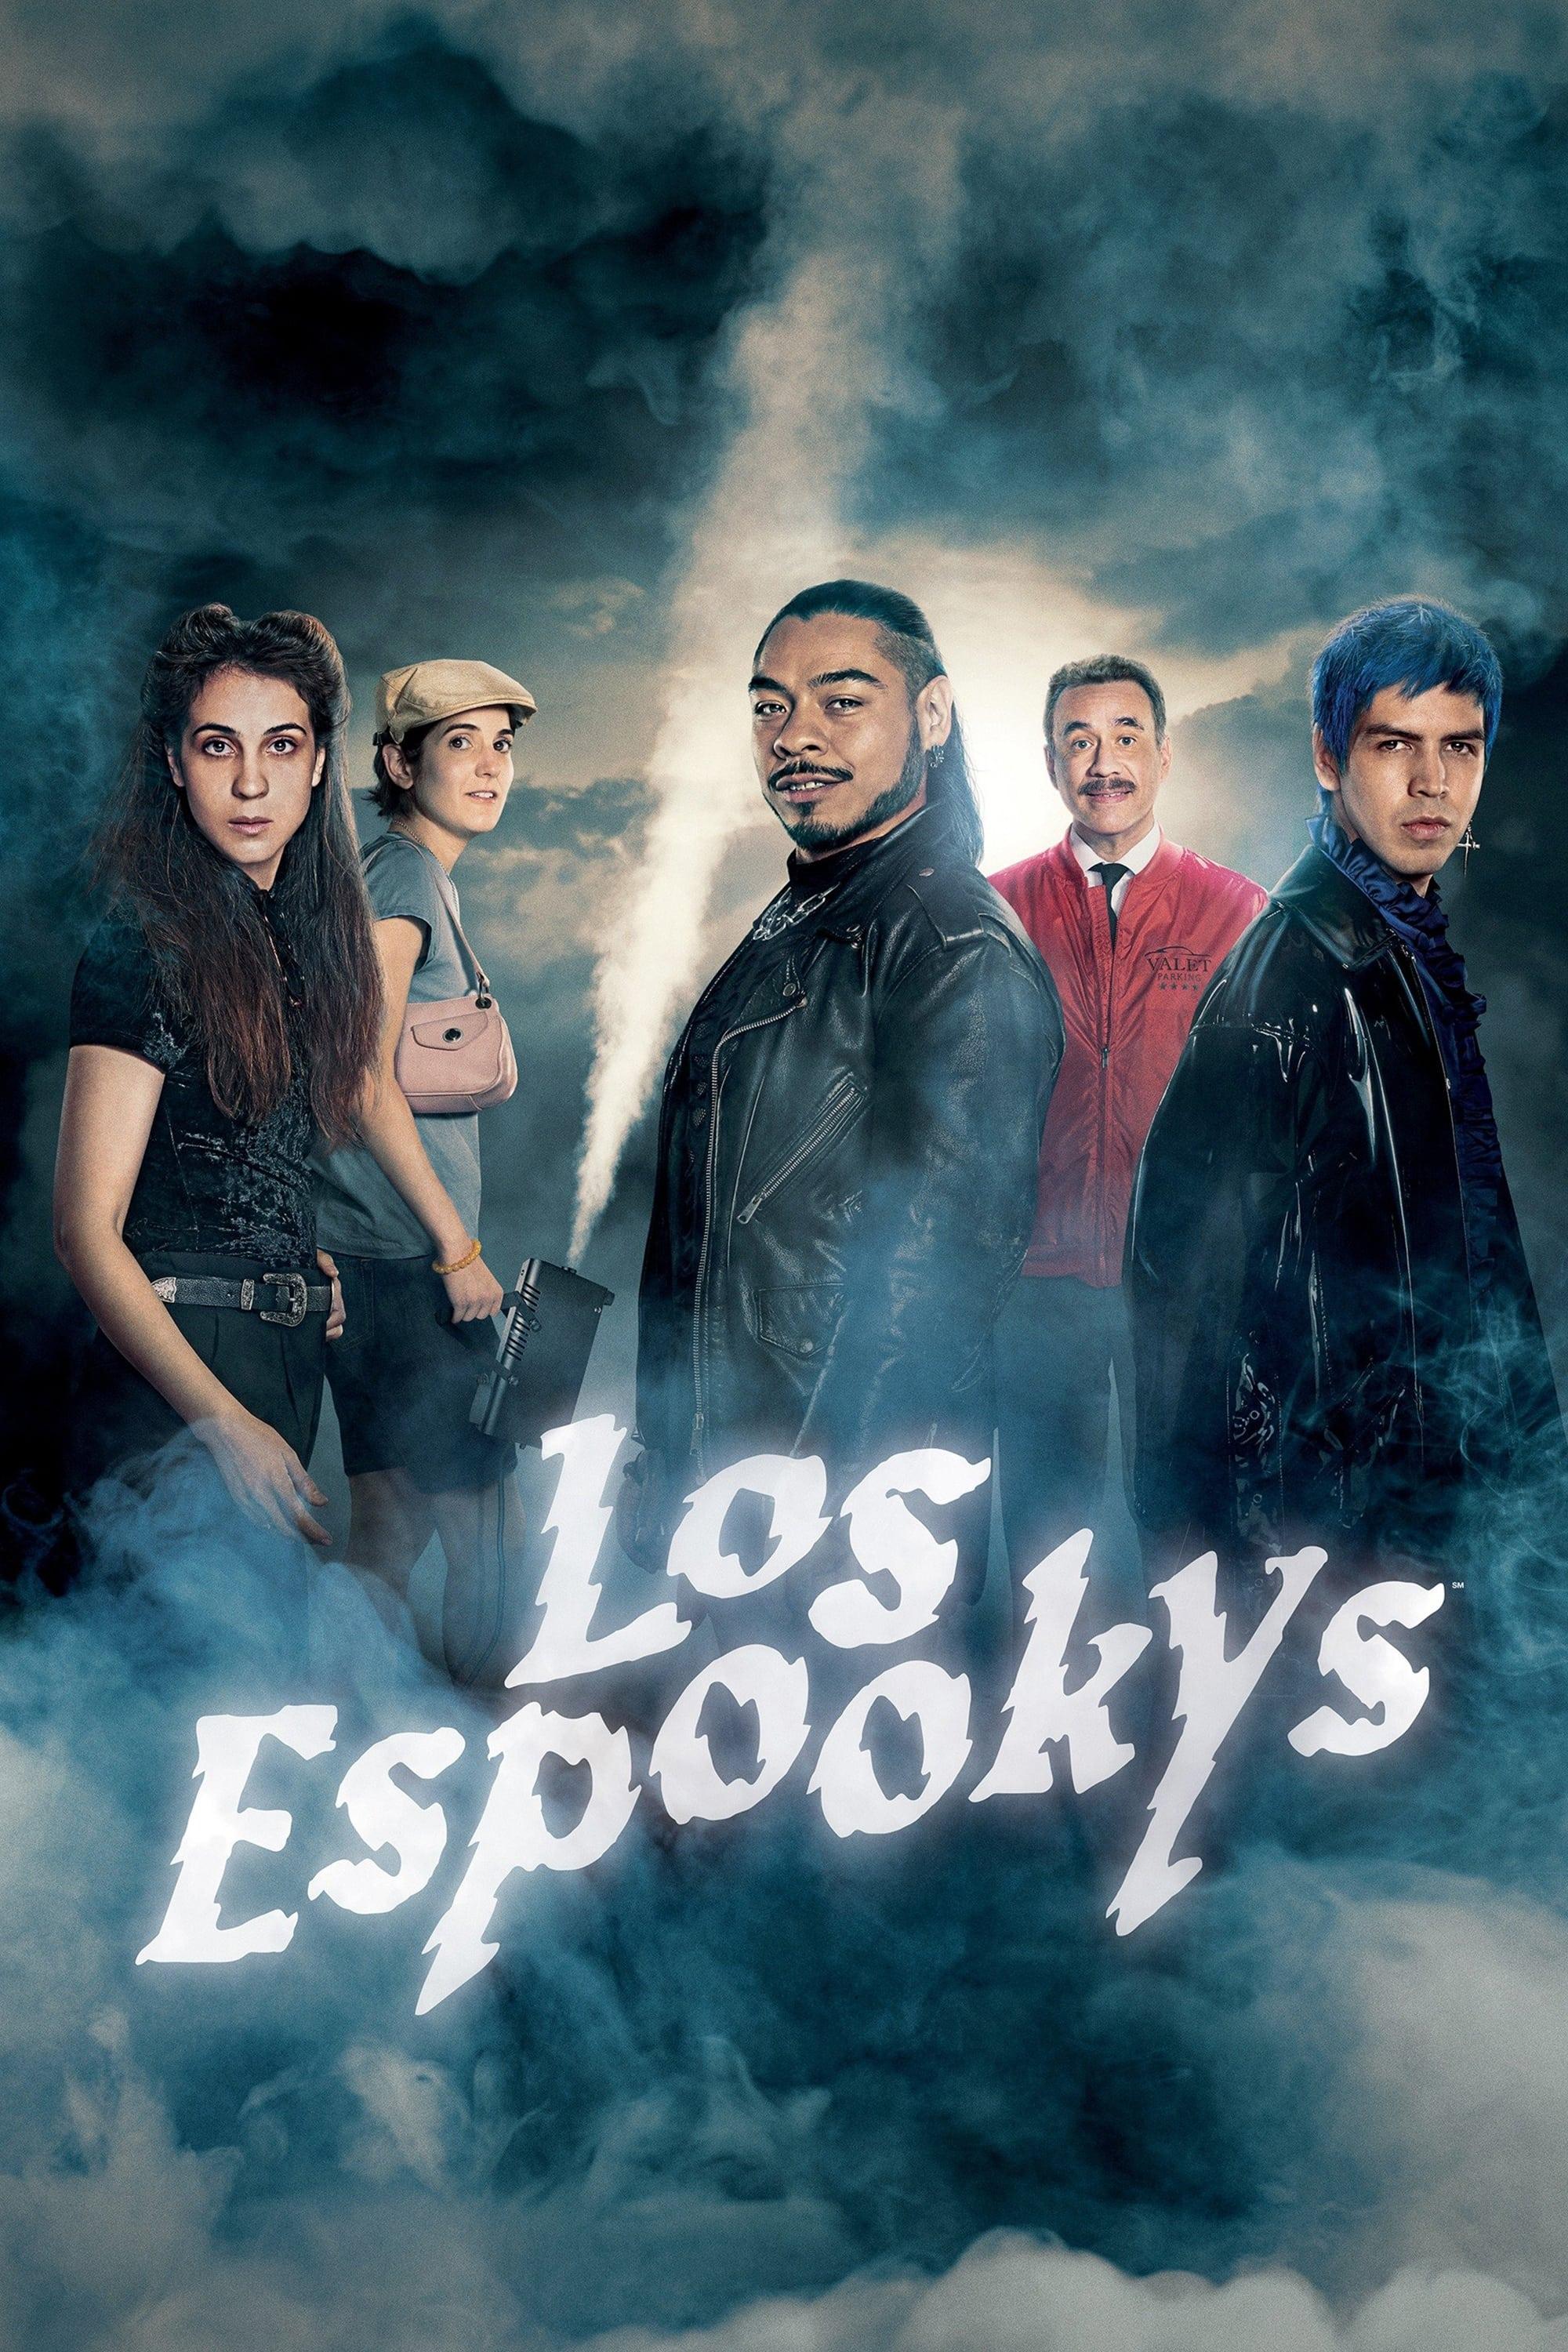 Los Espookys poster